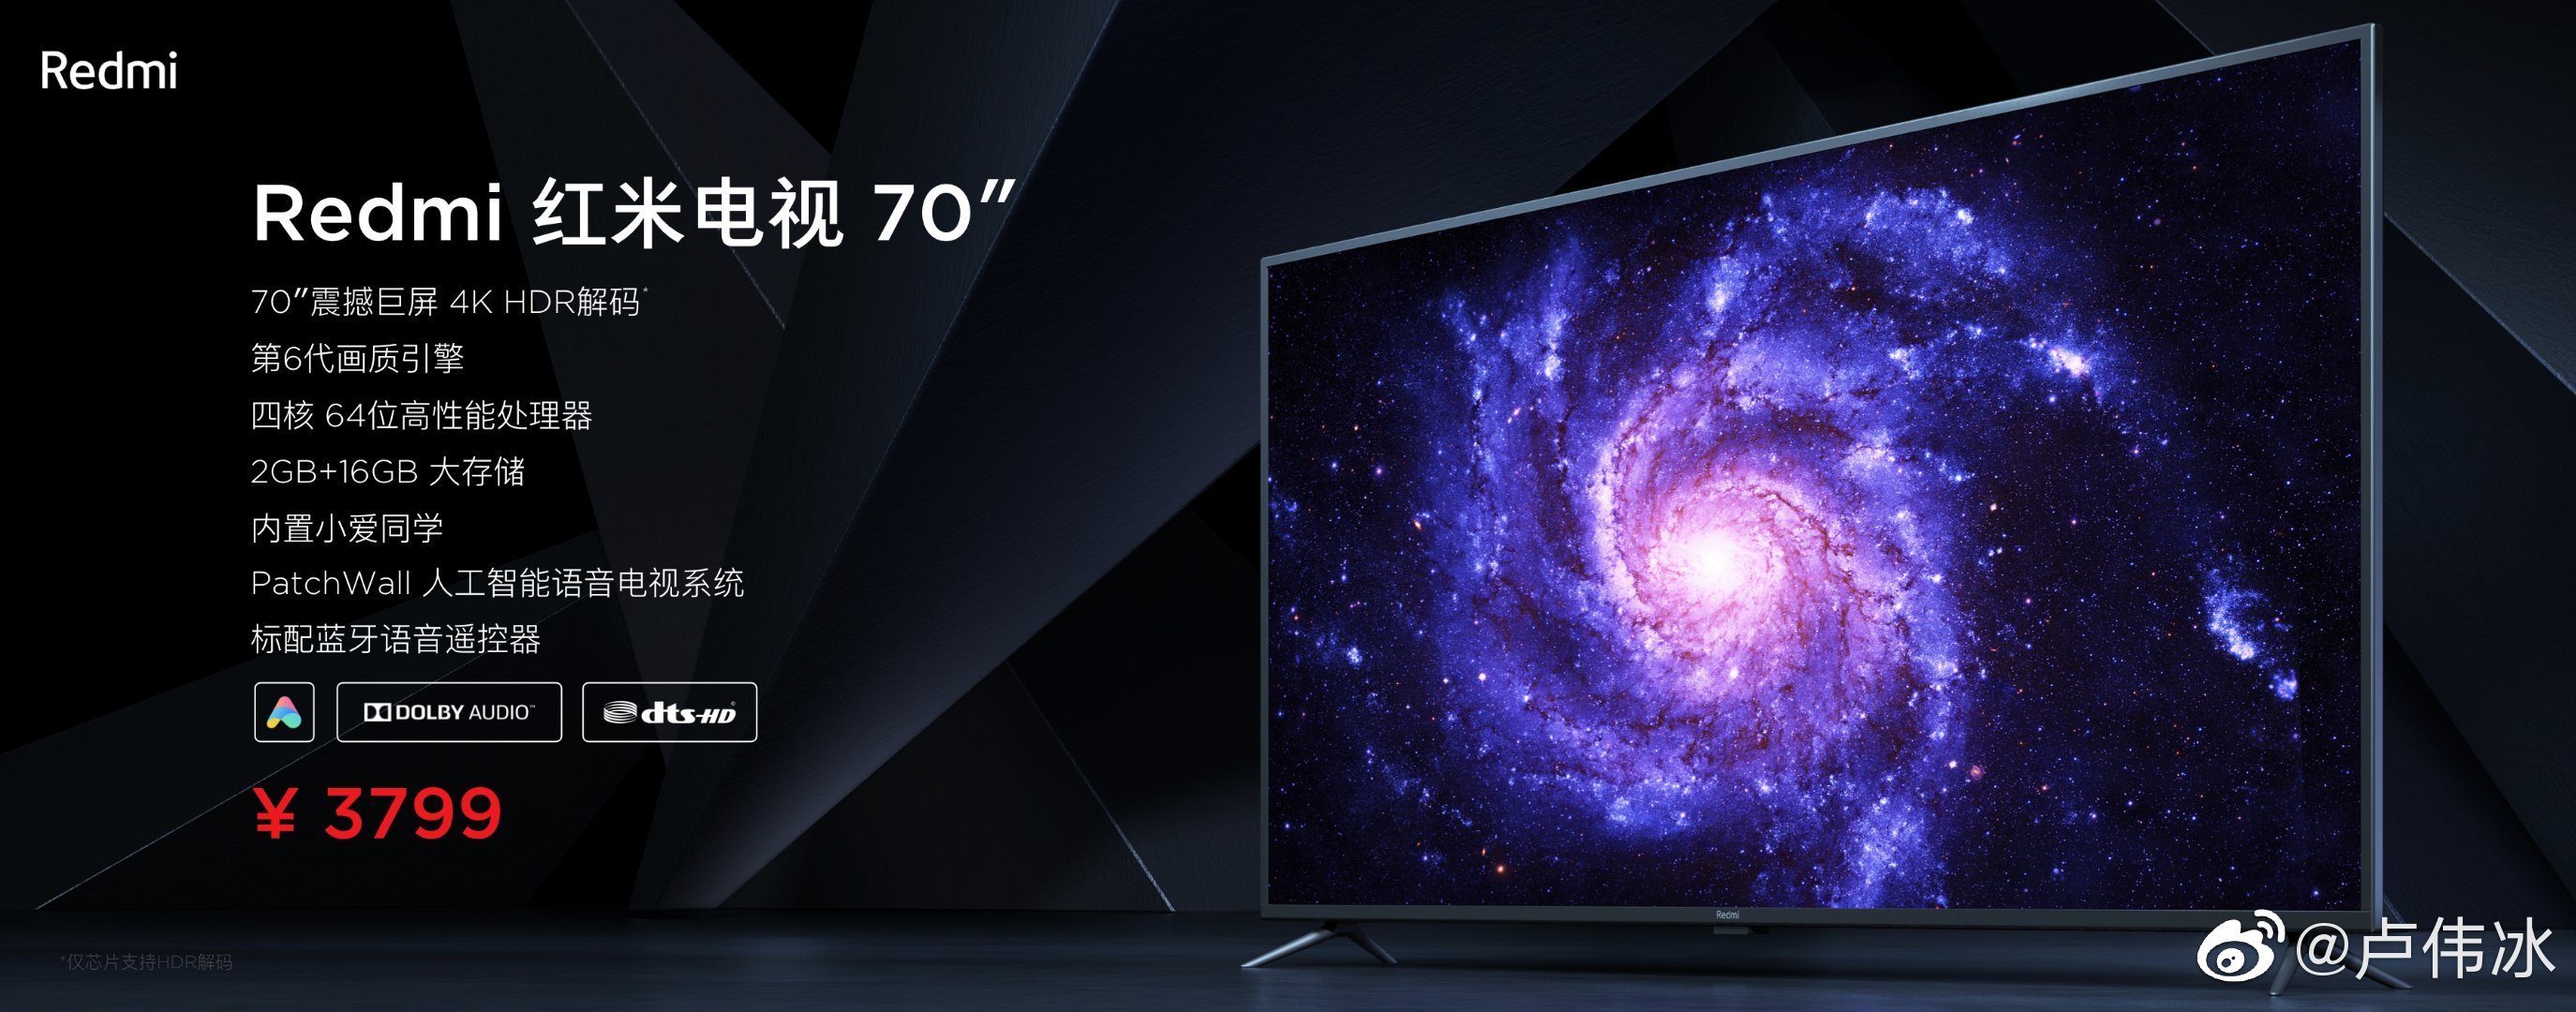 红米70寸电视将于9月10日上市 售价3799元